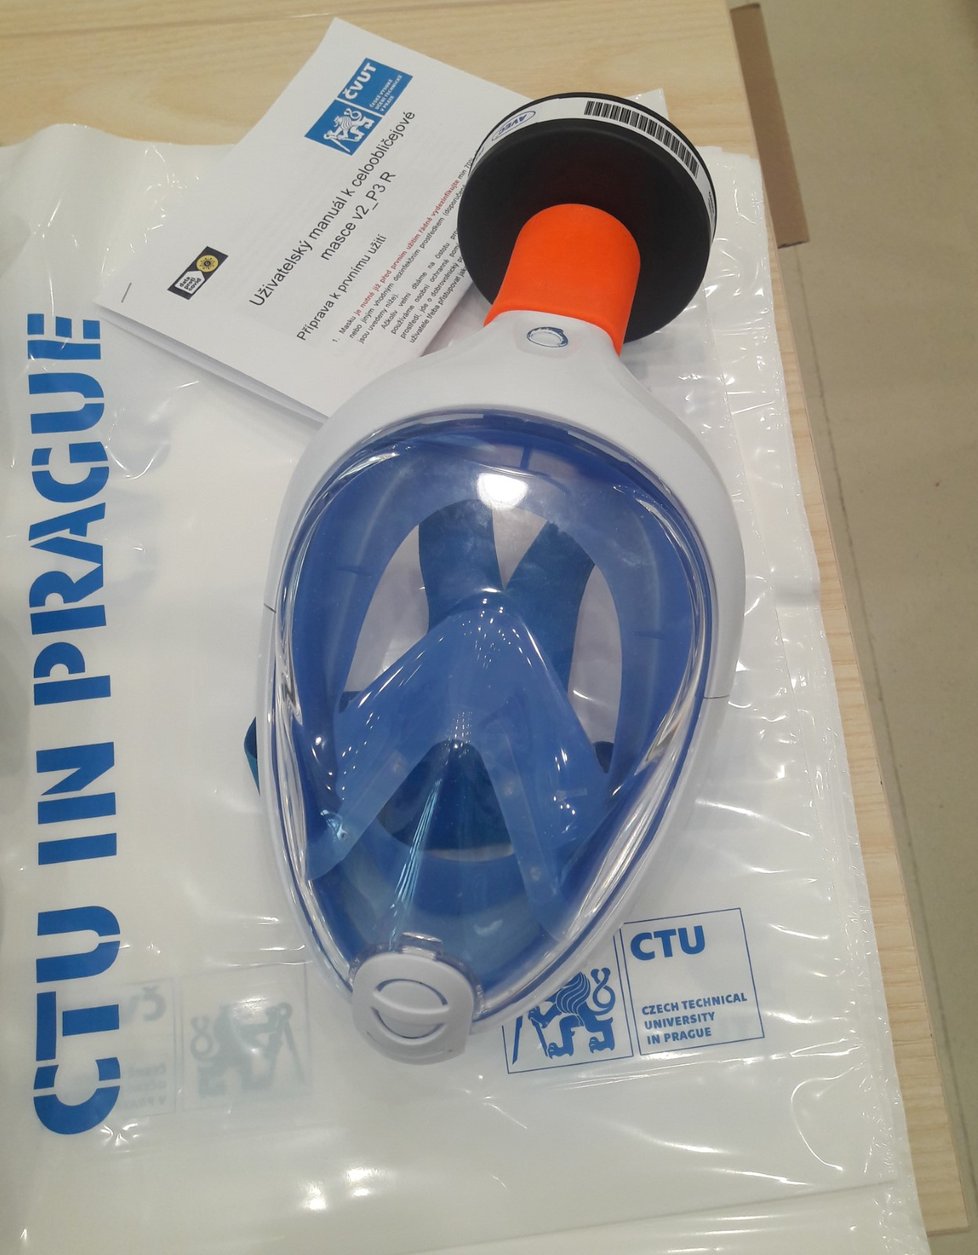 Šnorchlovací maska, kterou zástupci konsorcia COVID19cz a ČVUT modifikovali na celoobličejovou ochranu před koronavirem.